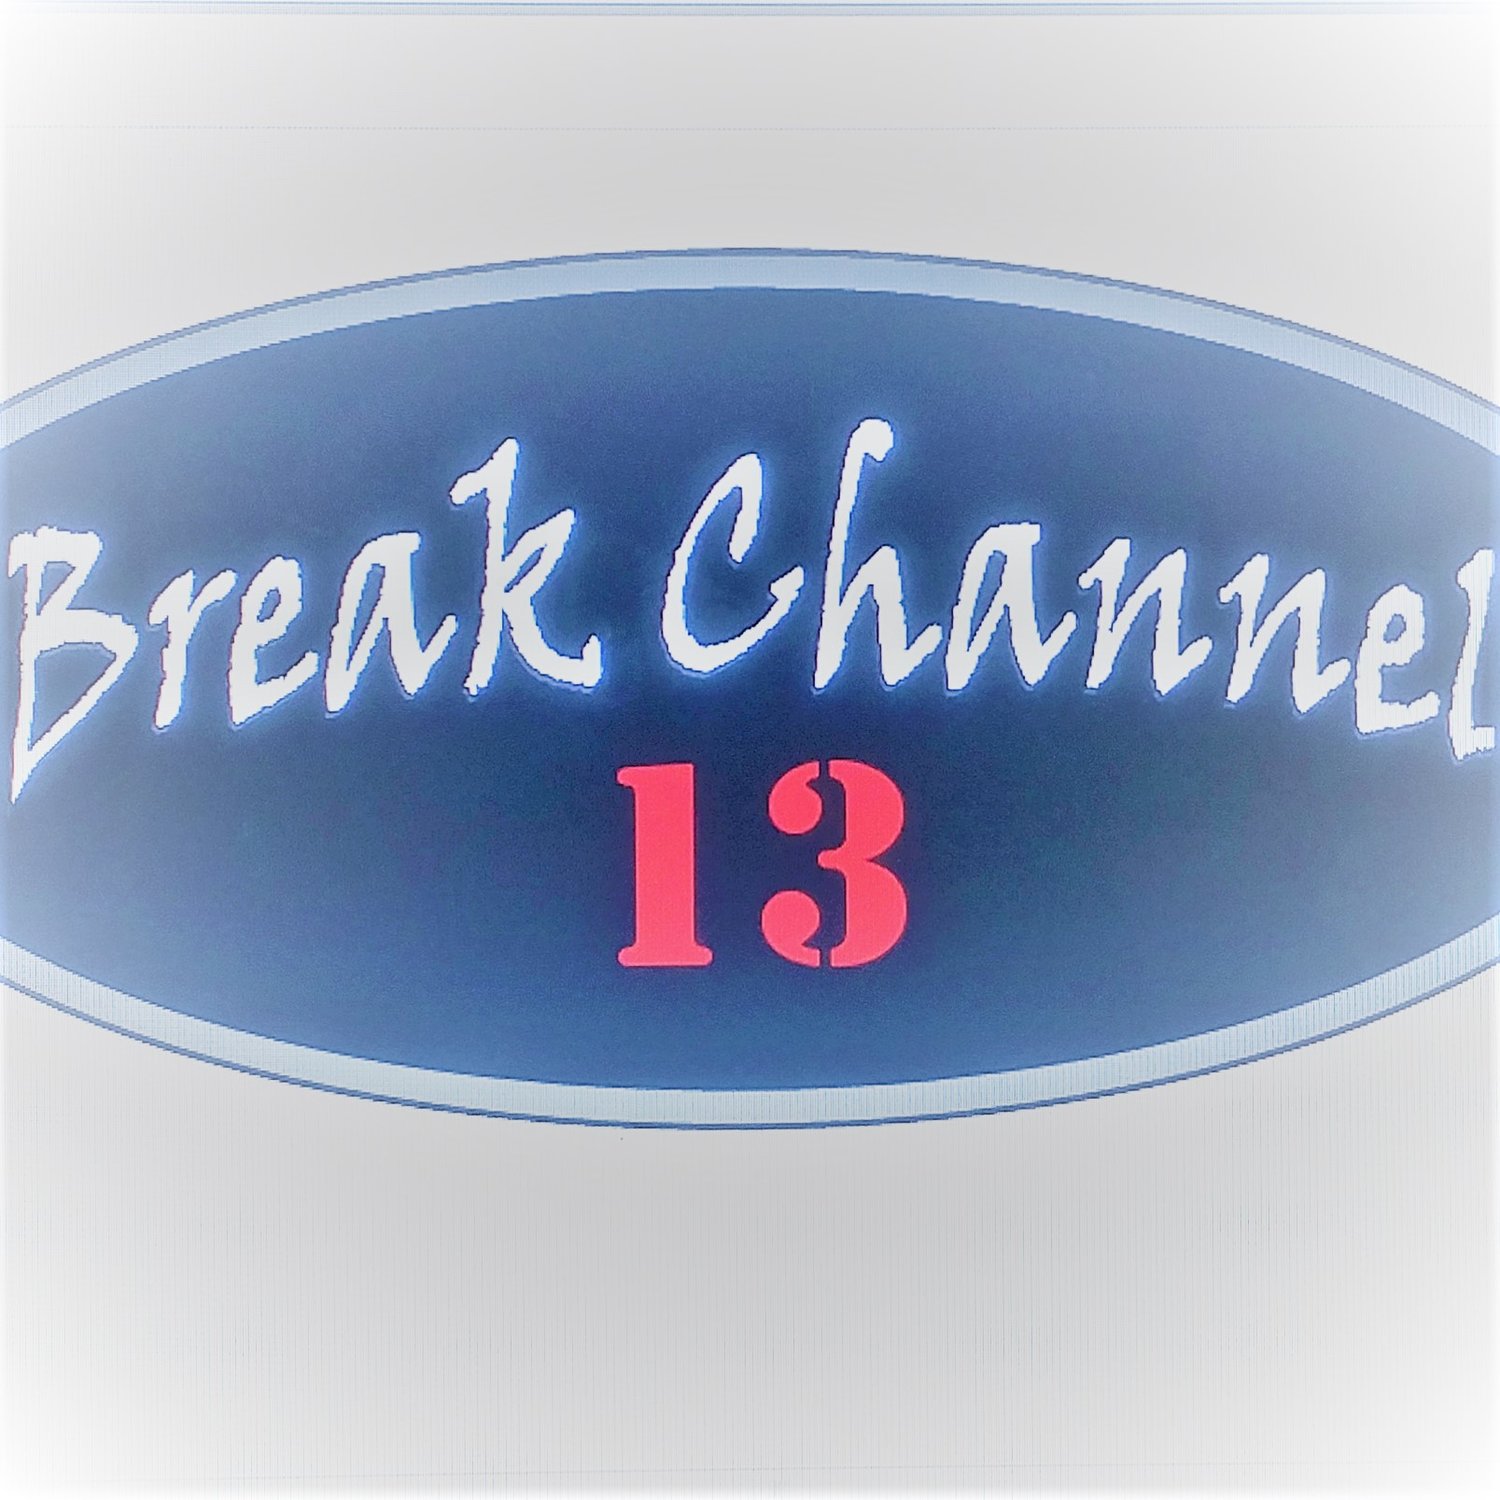 Break Channel 13